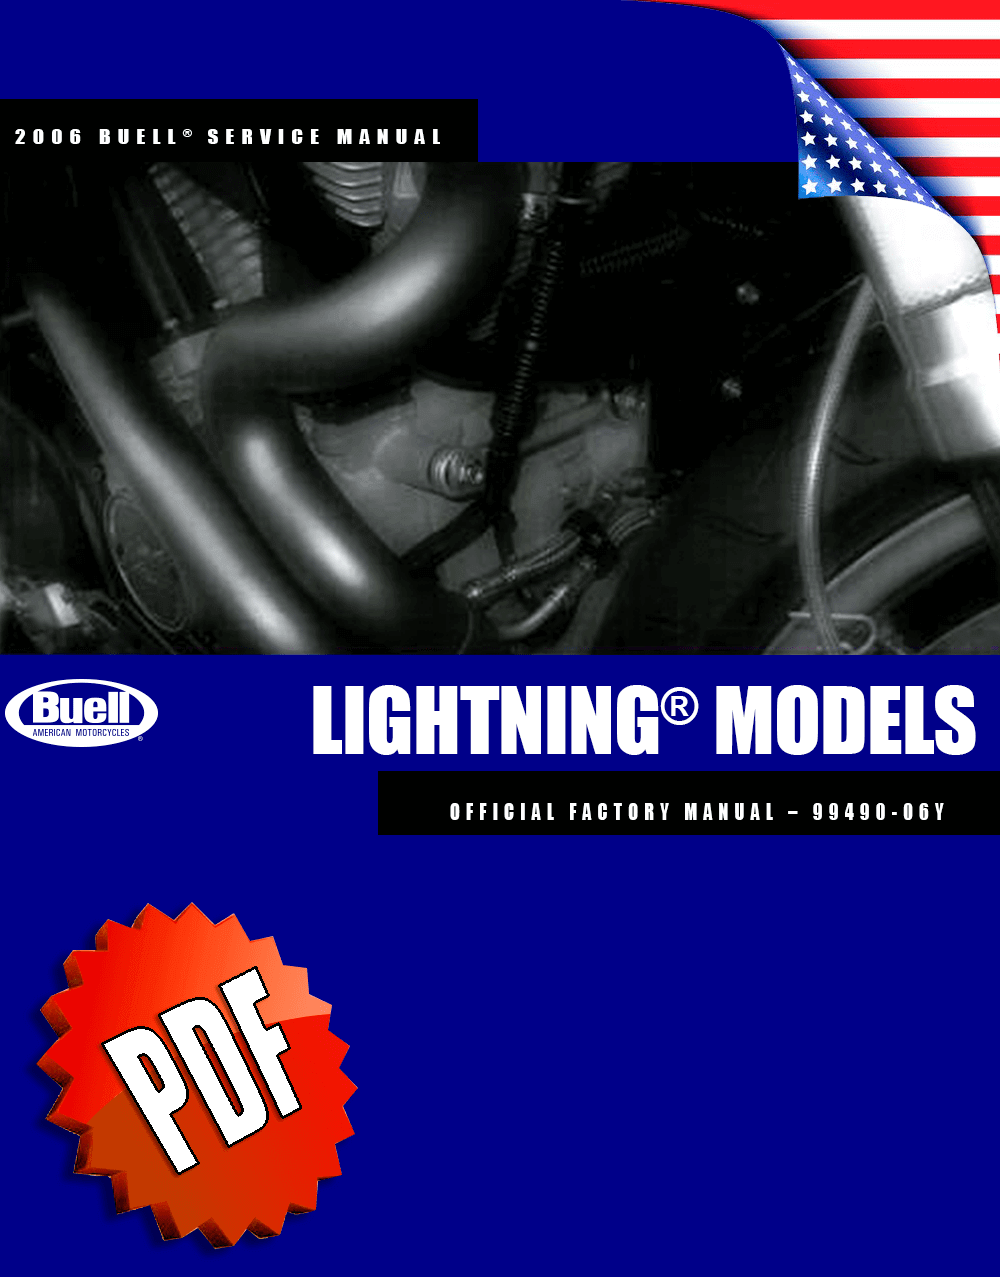 Buell Lightning Models 2006